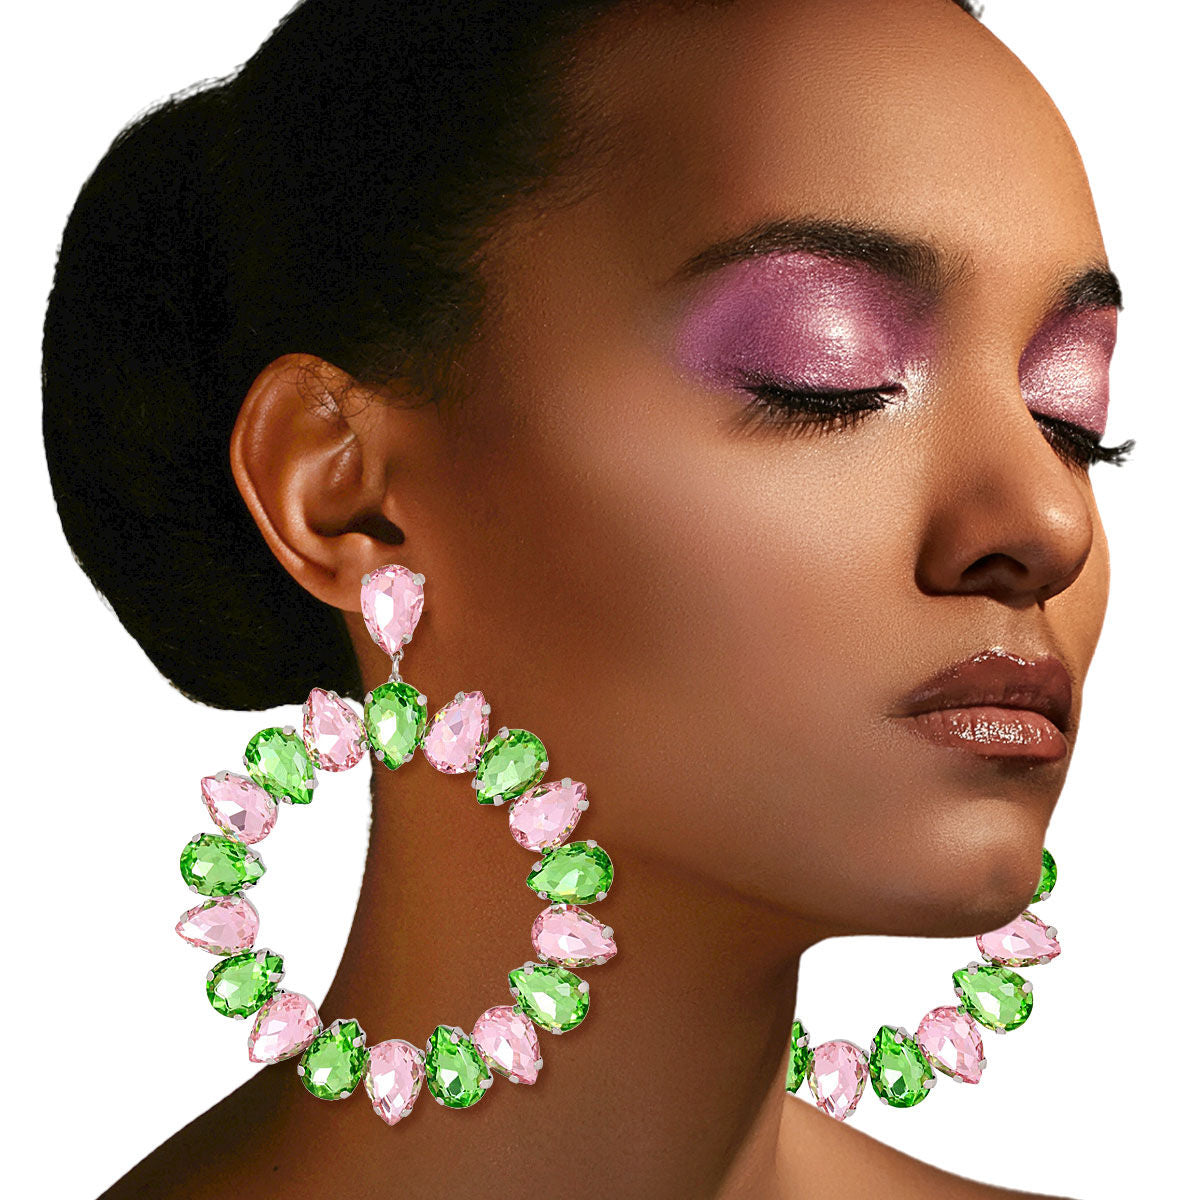 Pink Green Glass Drop Hoop Earrings